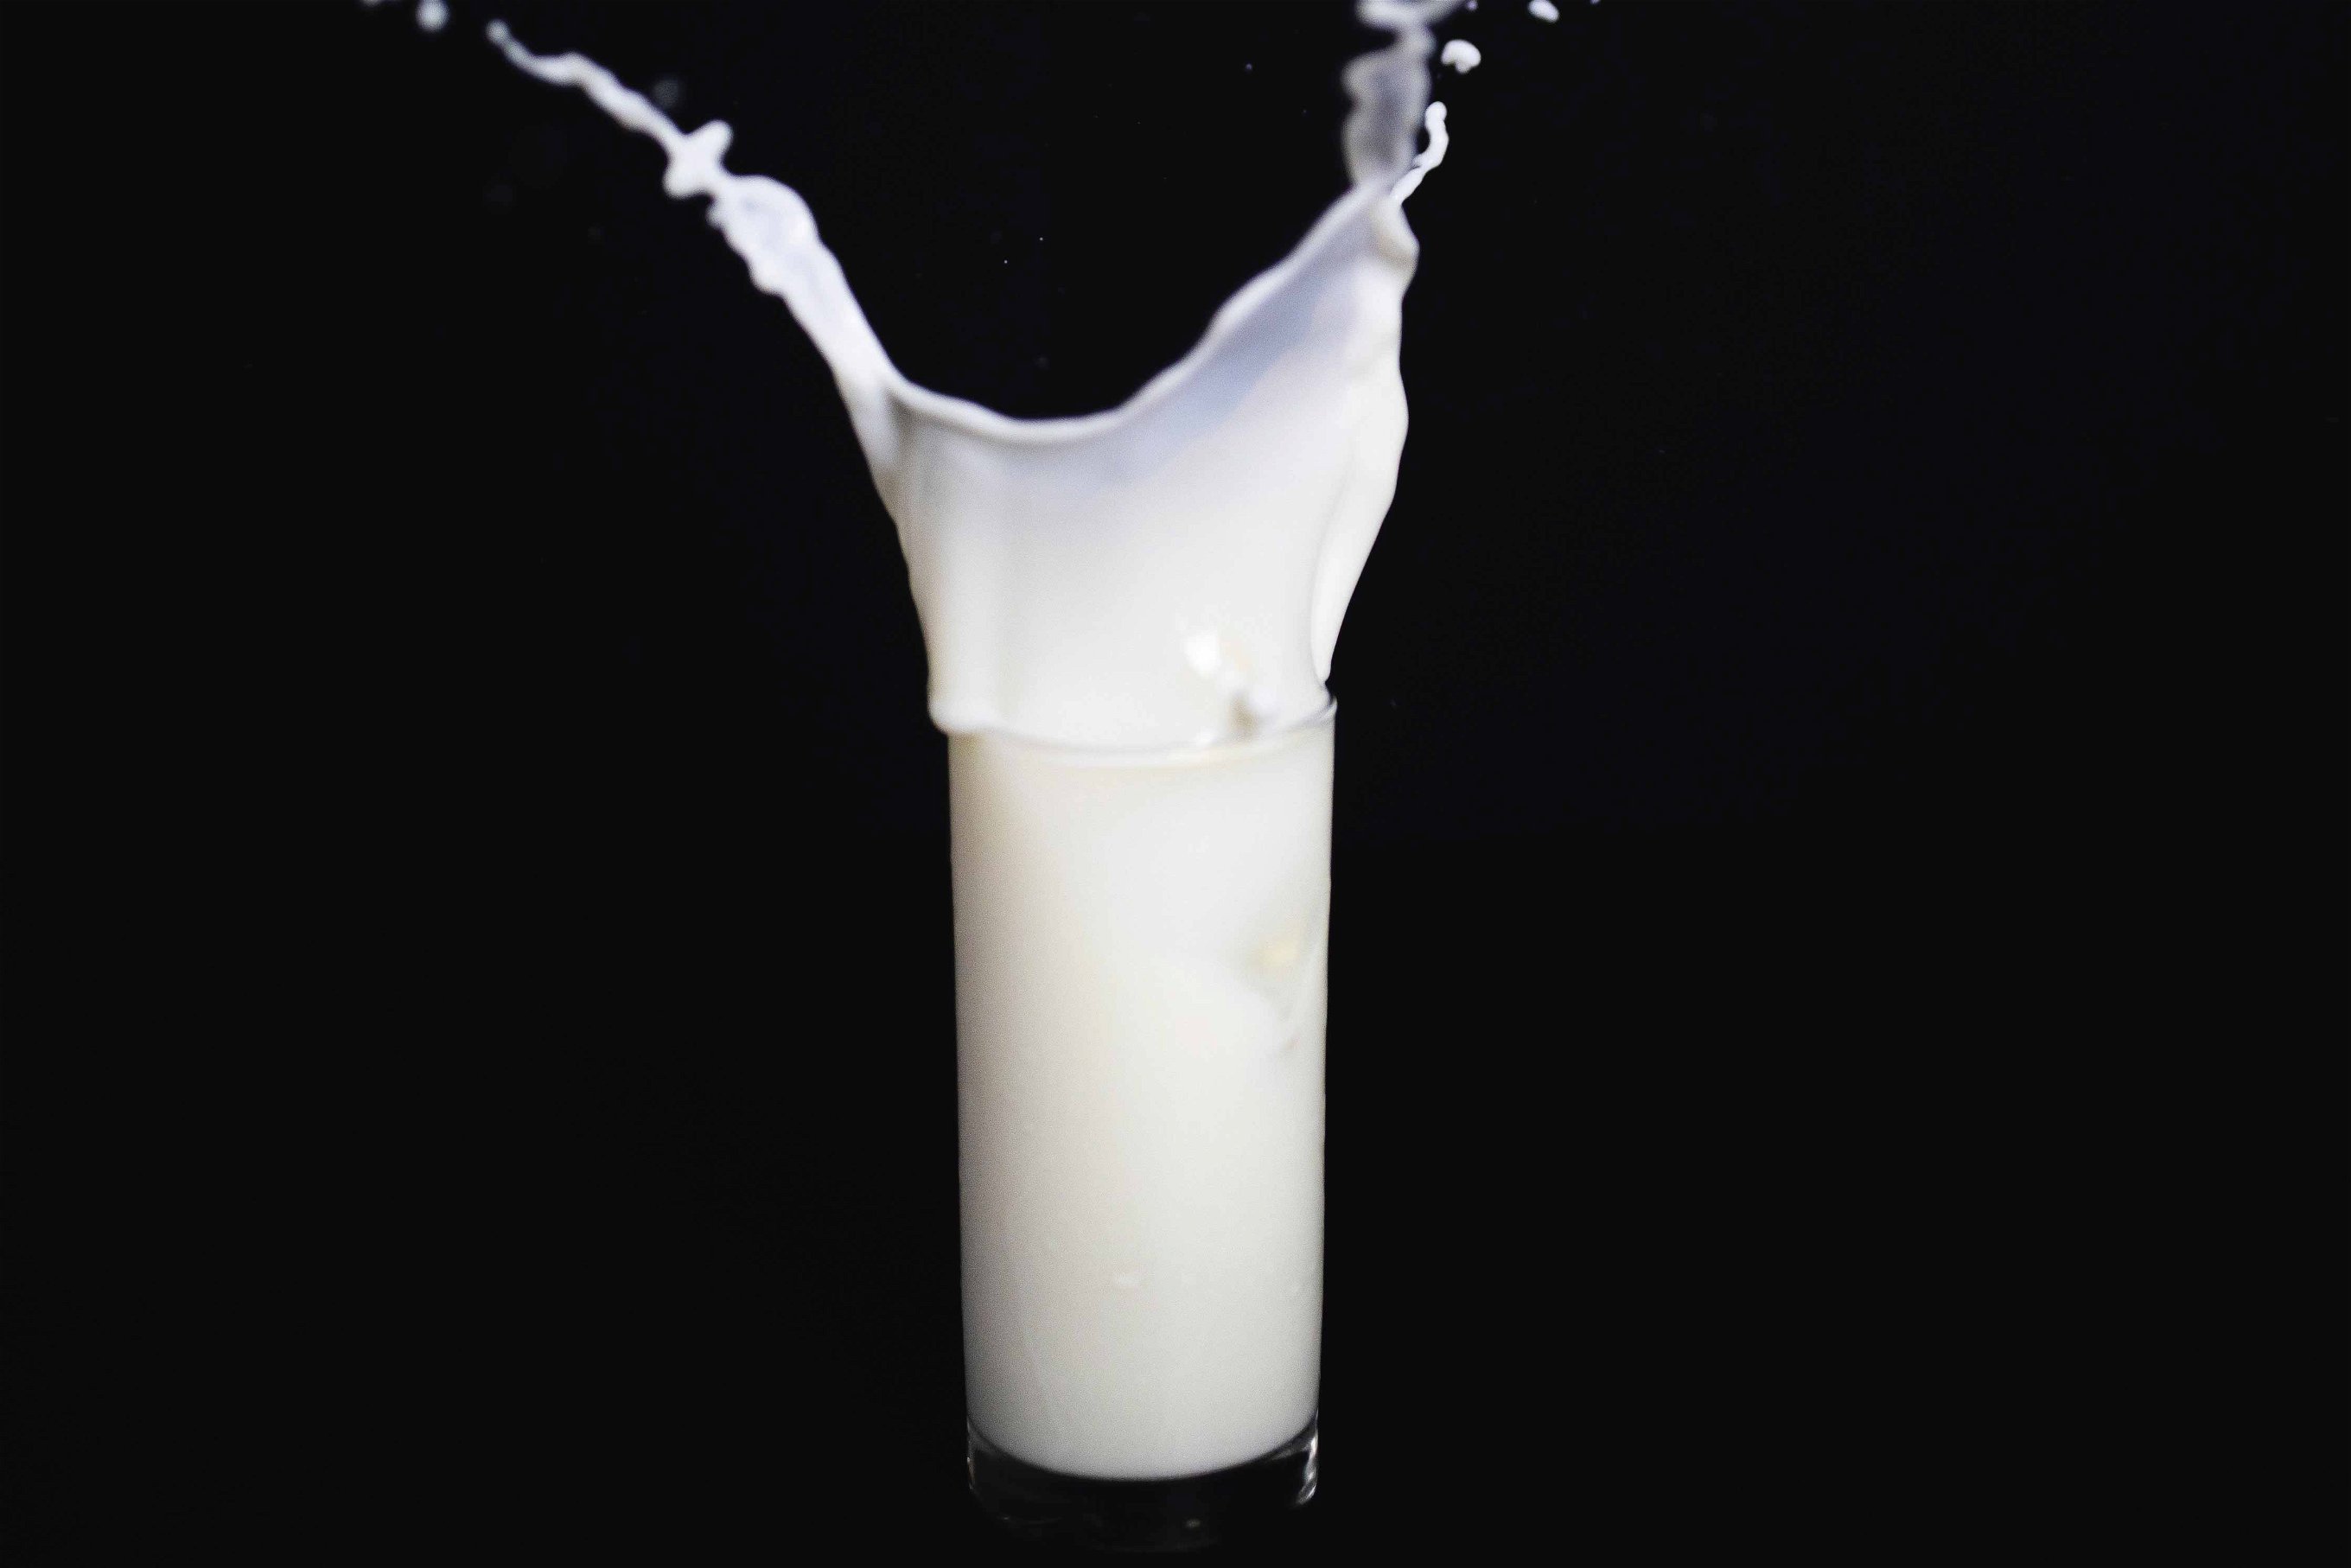 Inspiriert vom Vorbild künstlich wachsender Muskelzellen, soll auch Milch entstehen.